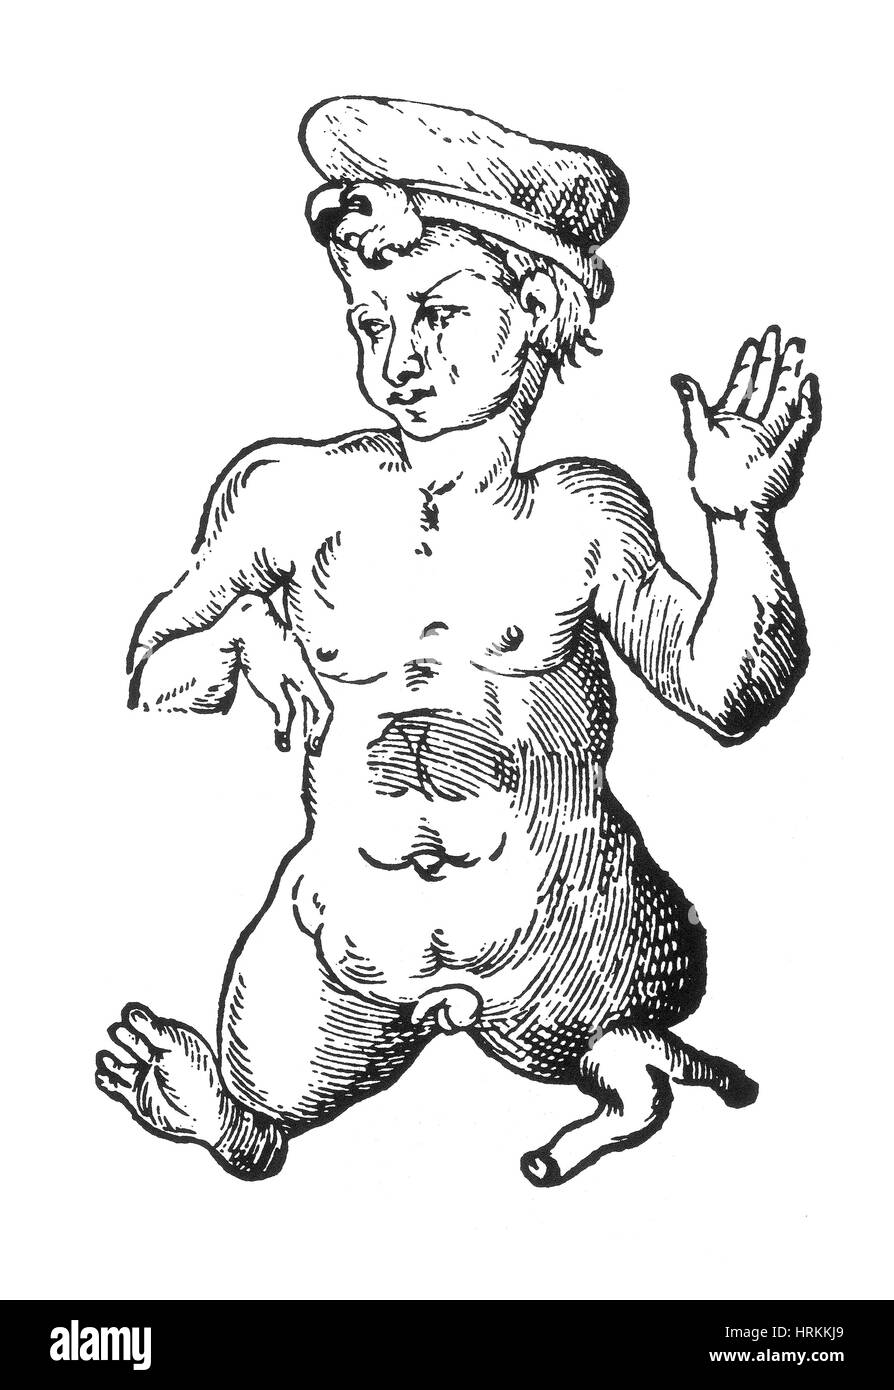 Les droits de l'enfant monstrueux, 16e siècle Banque D'Images